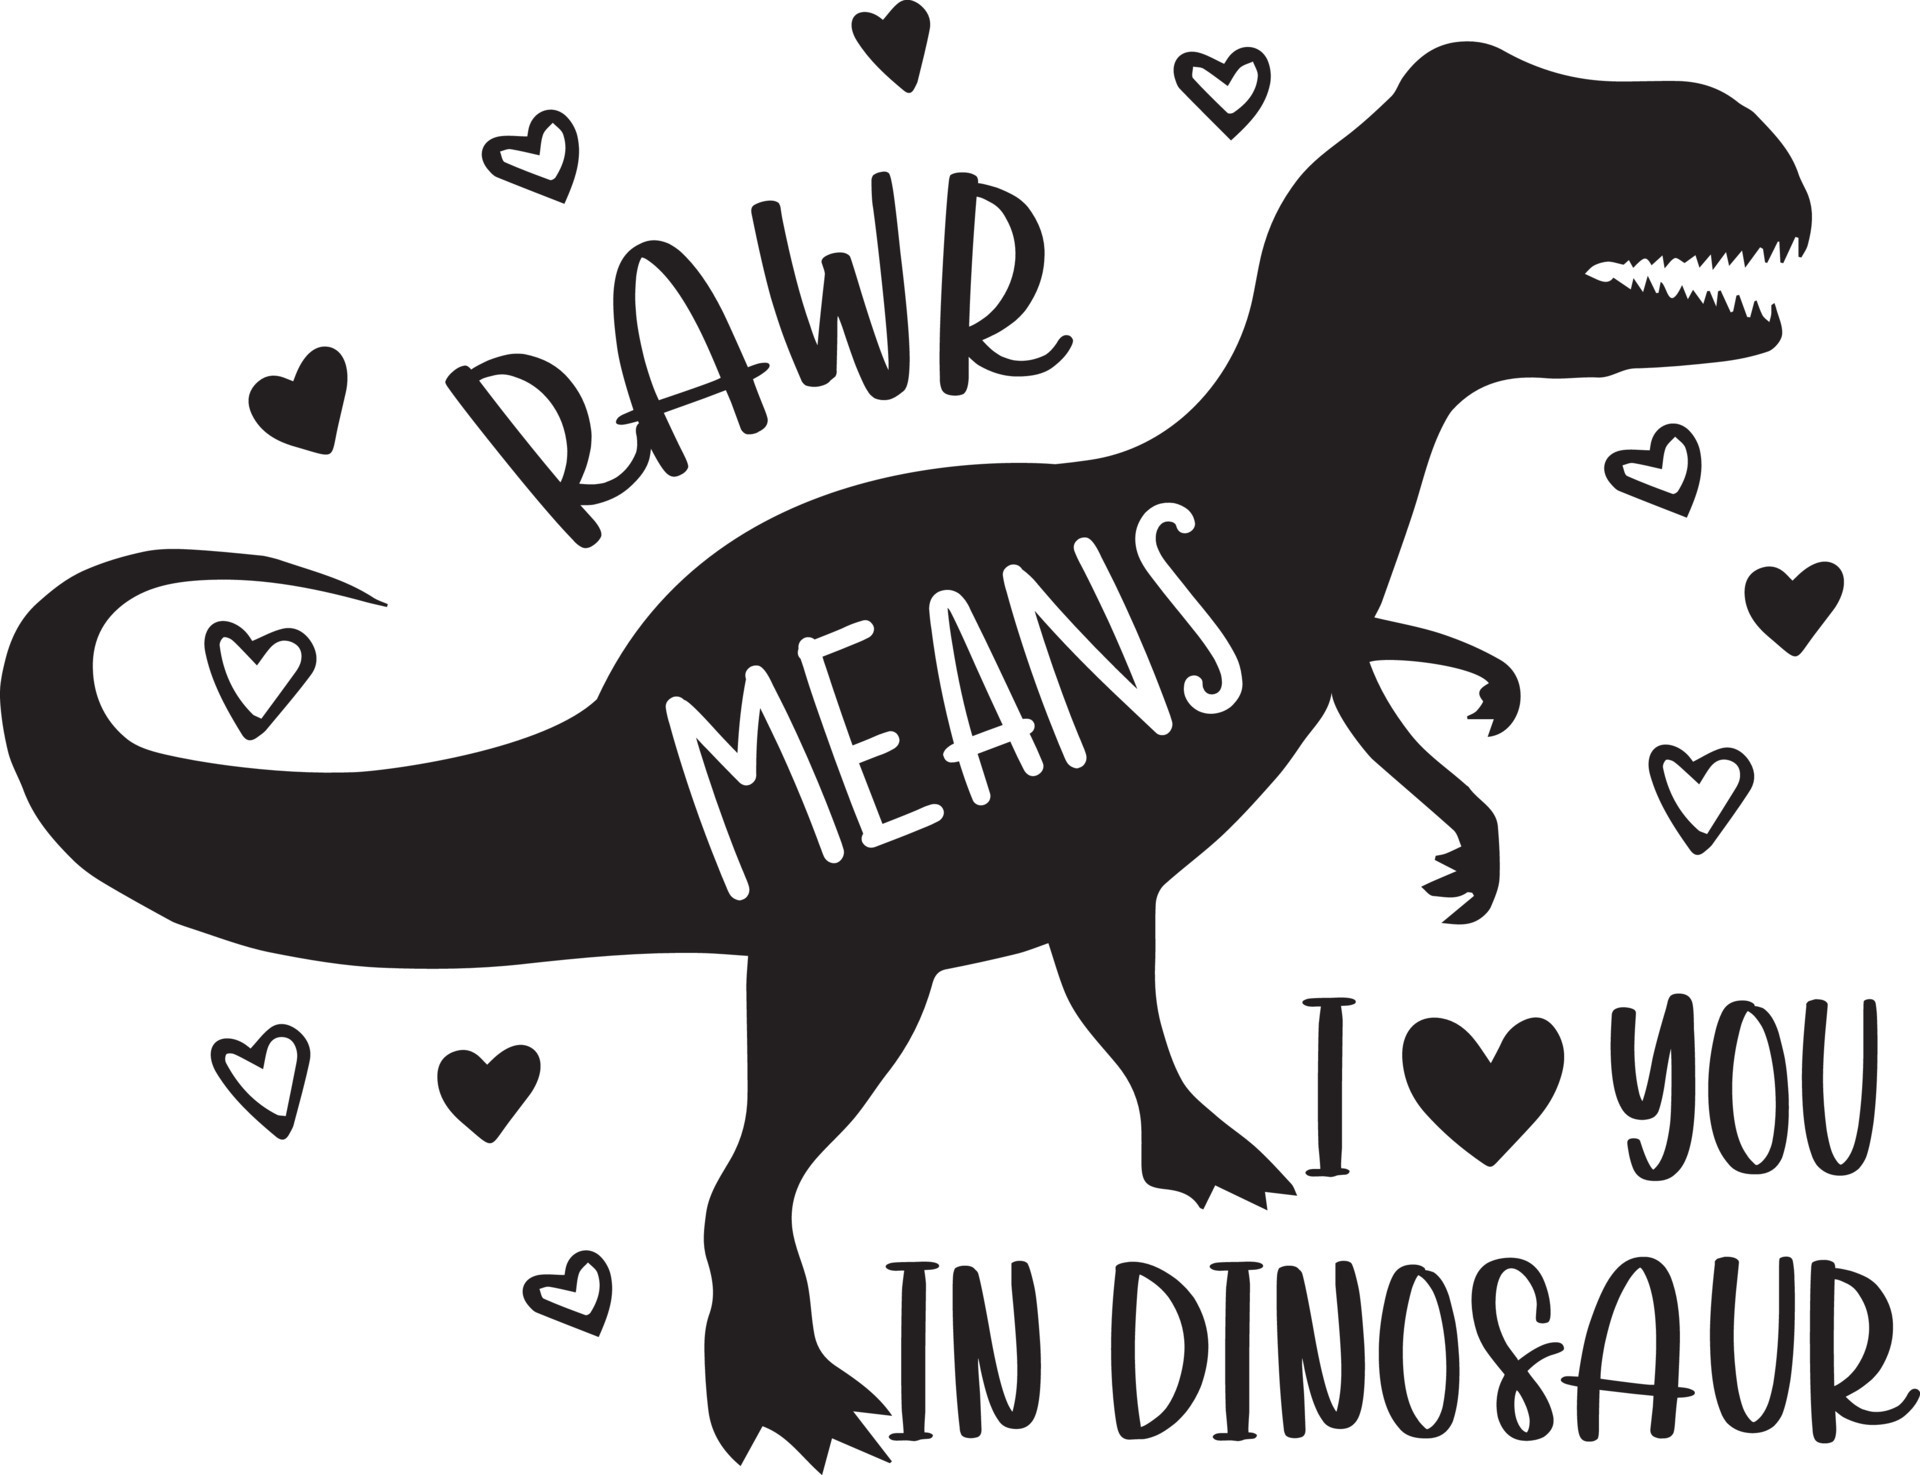 Gdkasrny Roar Significa Que Eu Te Amo Em Colar De Dinossaur